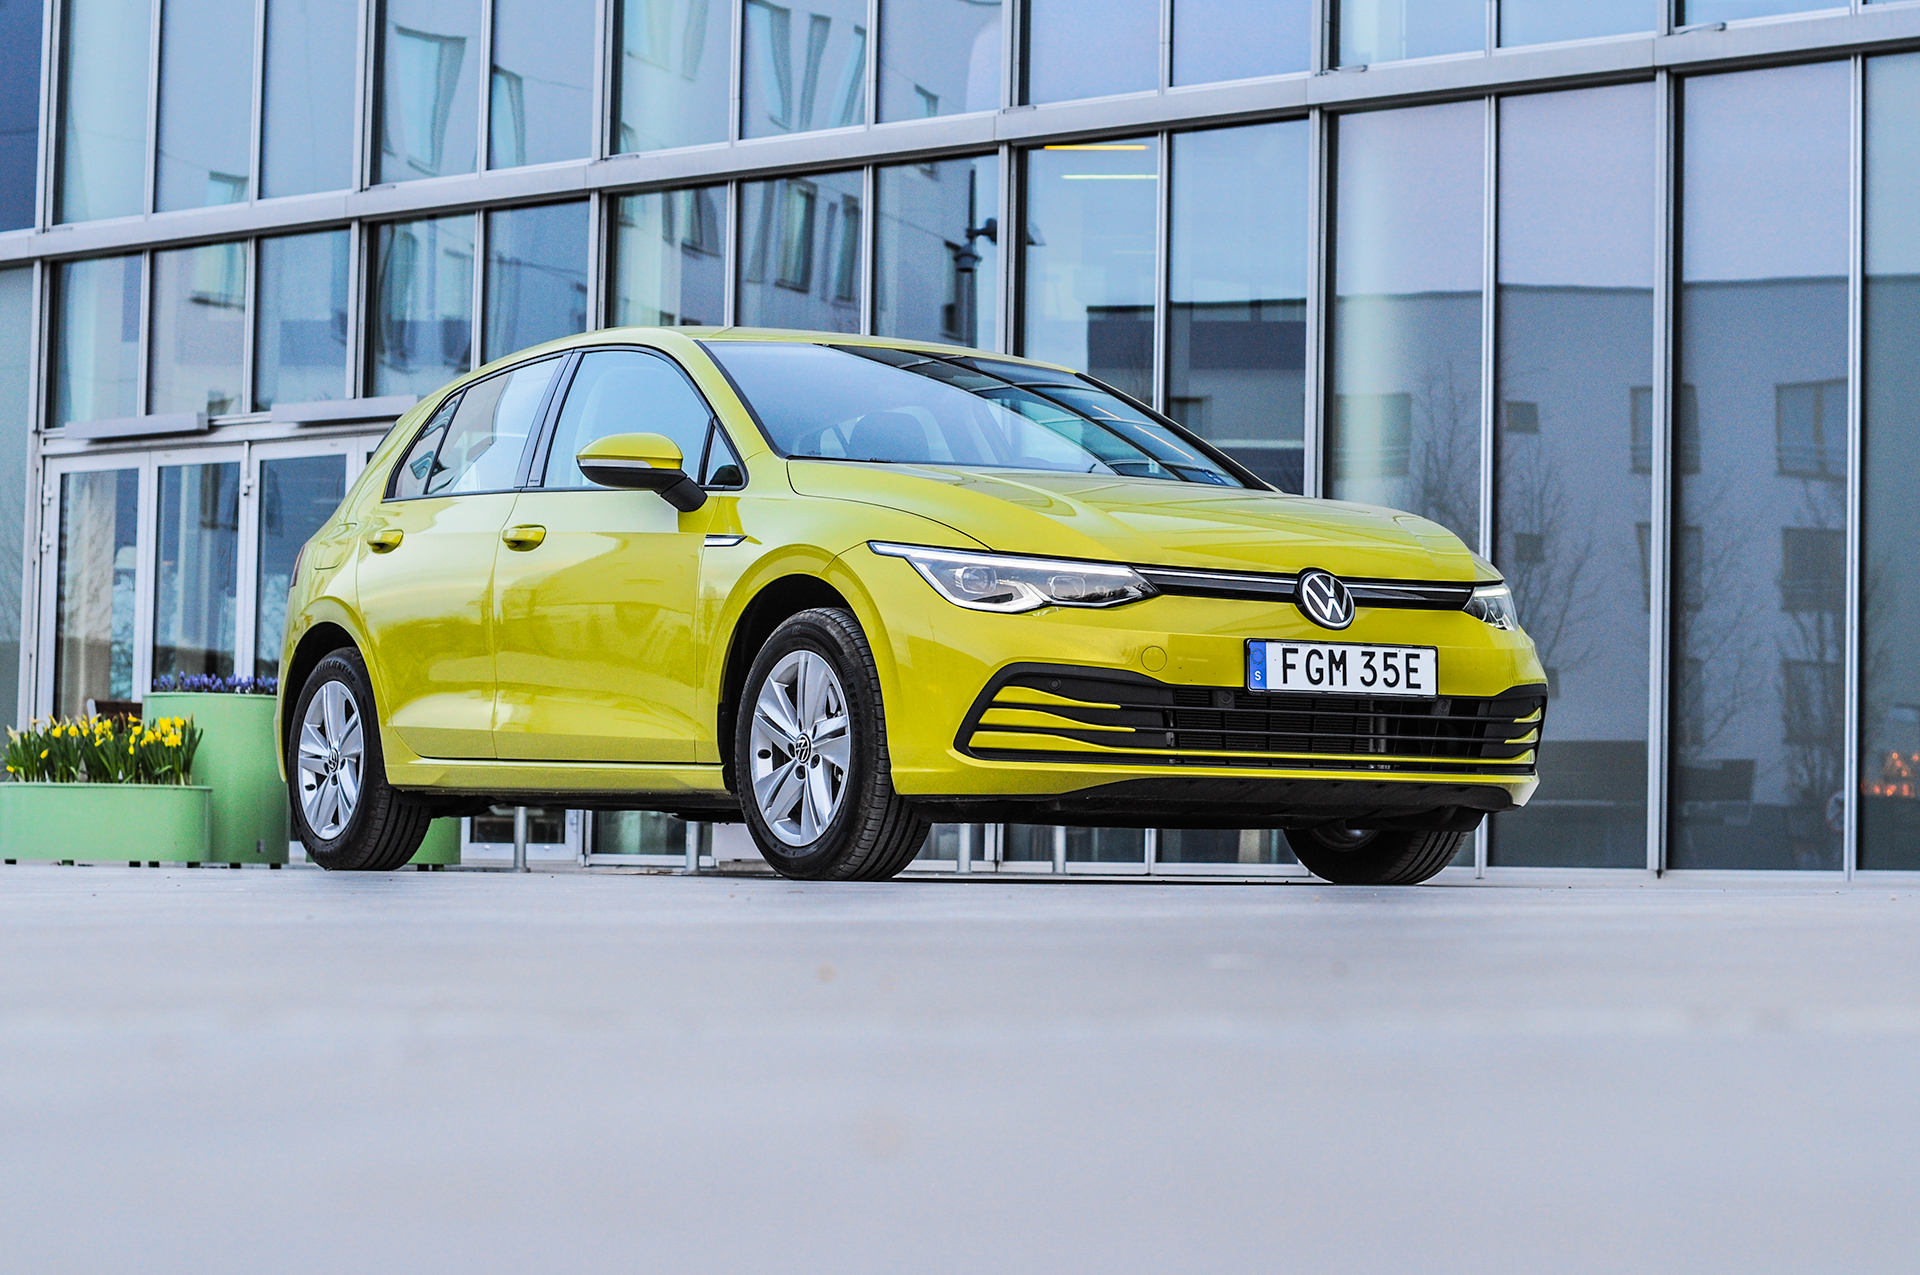 Omslagsbild till kostnadsfritt test av nya Volkswagen Golf